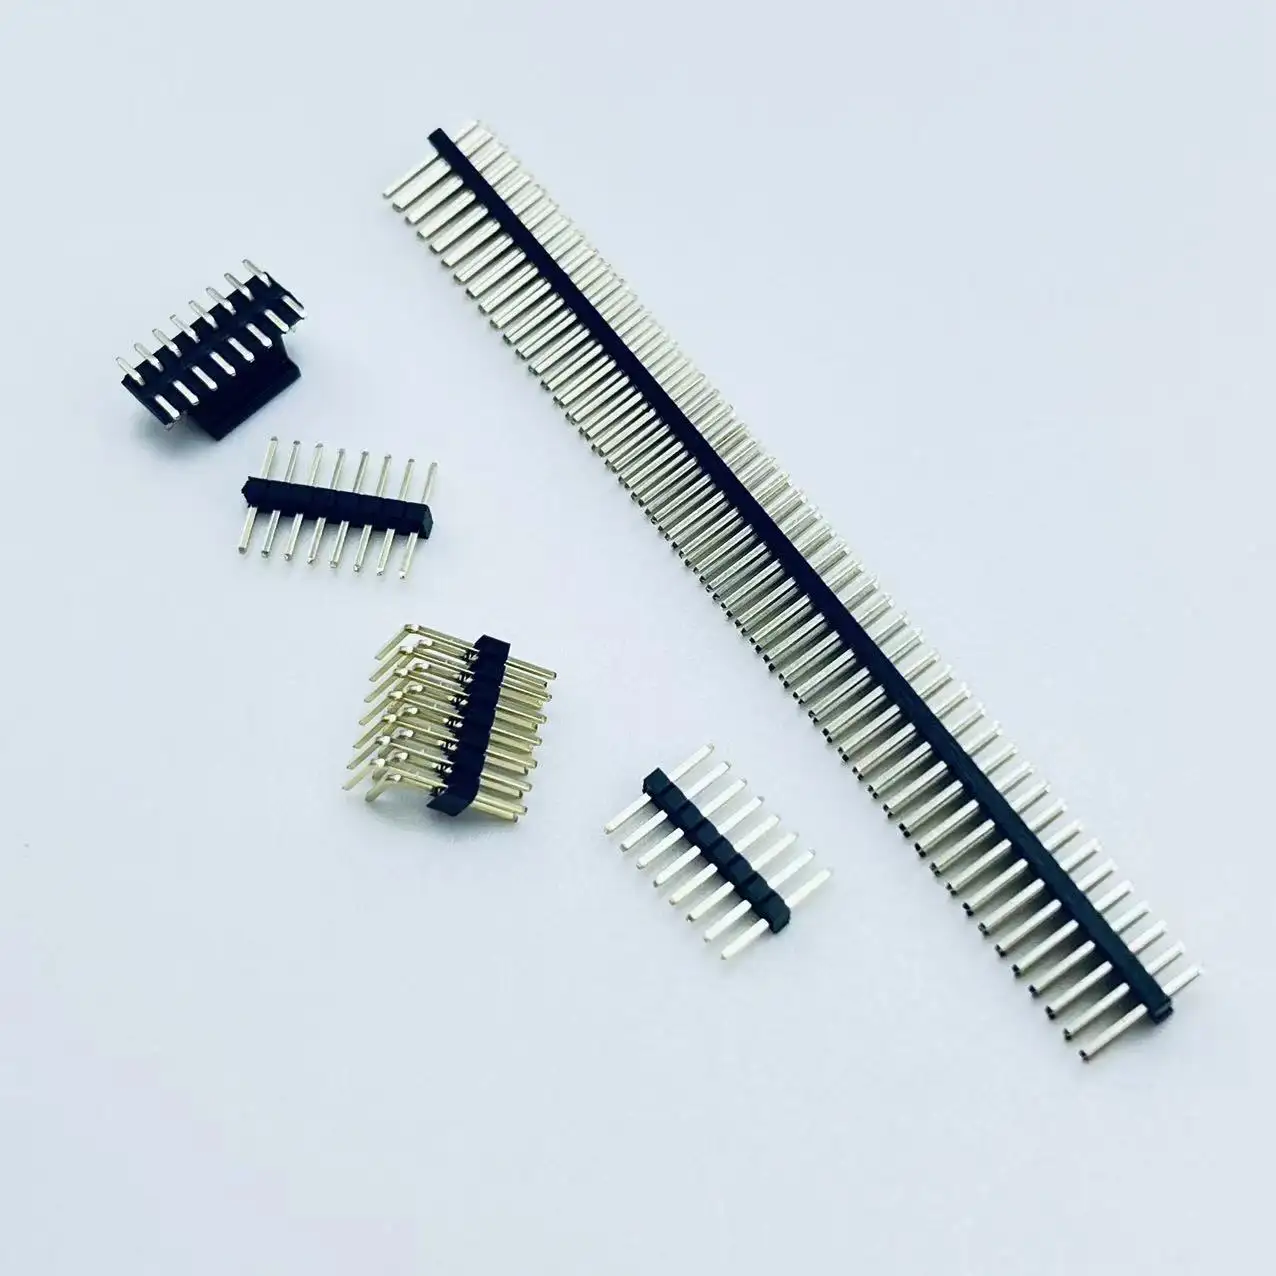 PCB pin header